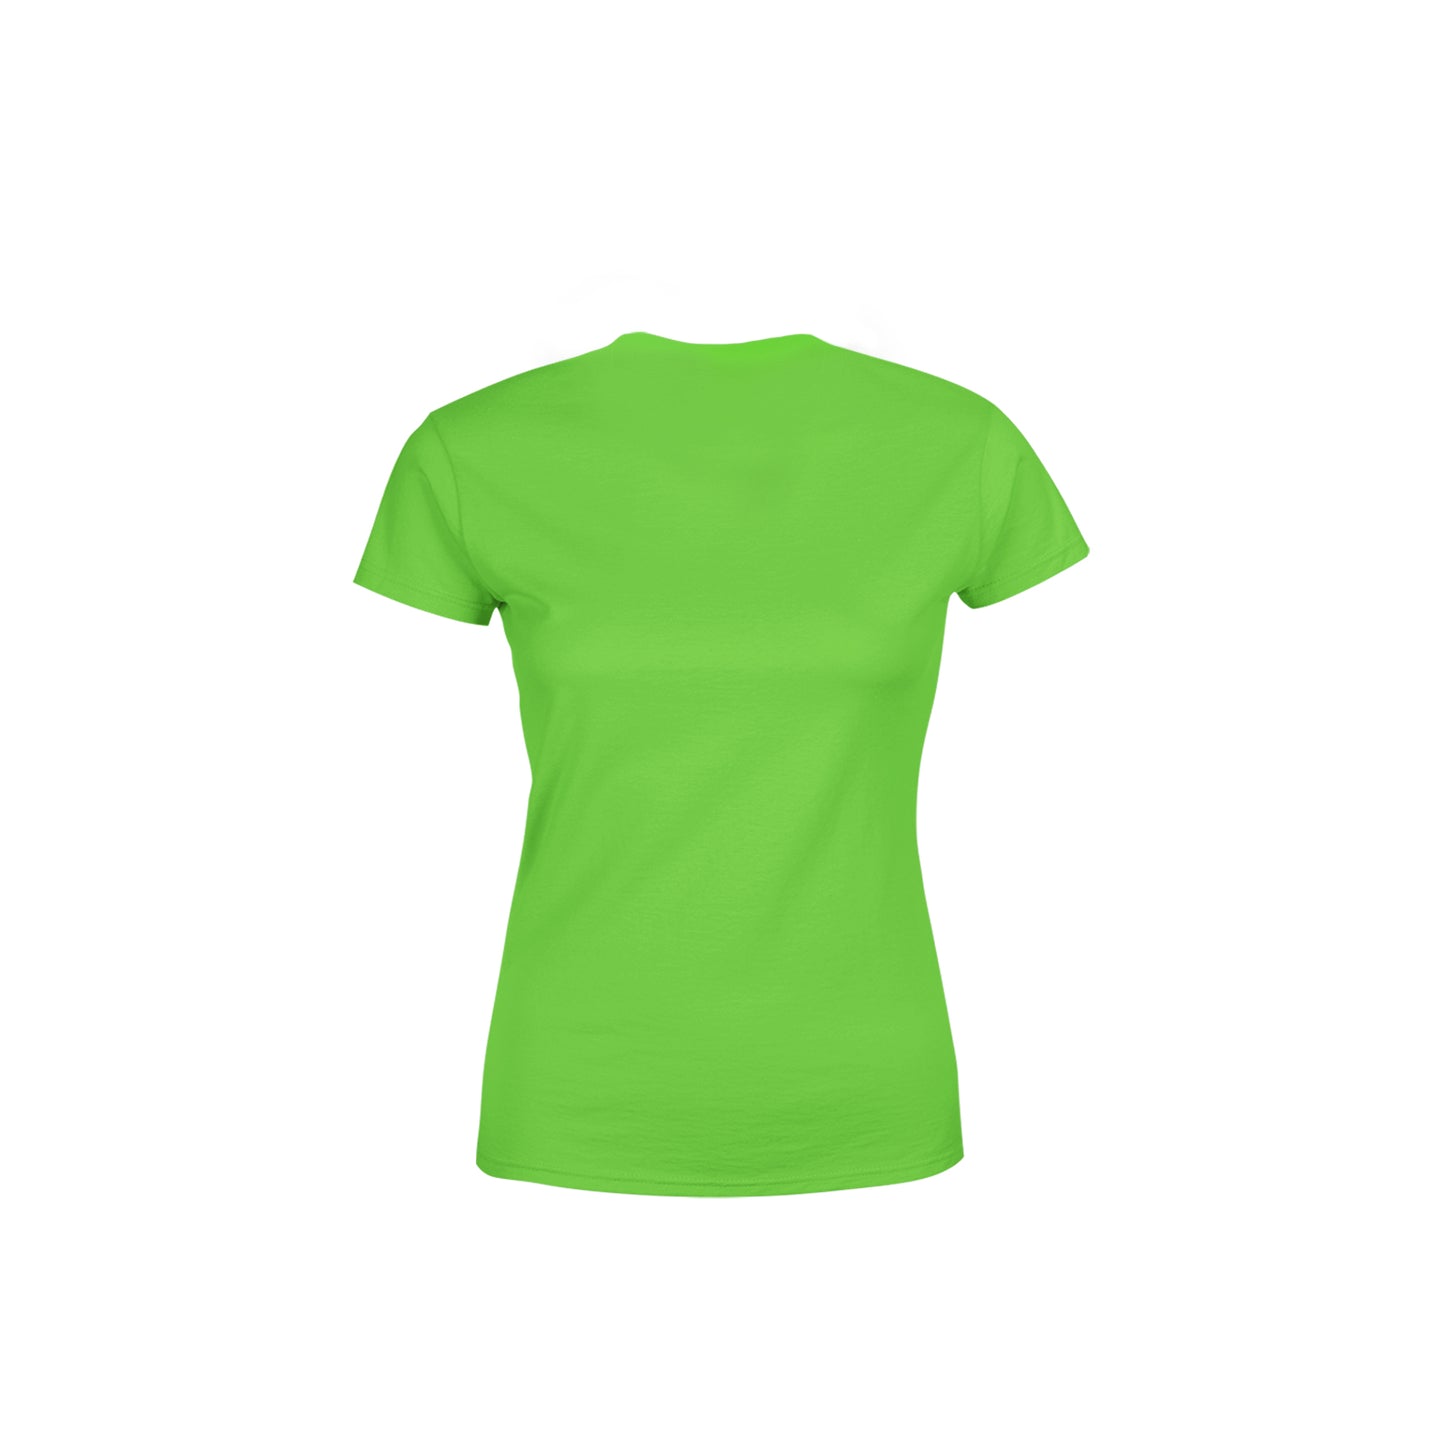 65 Number Women's T-Shirt (Liril Green)